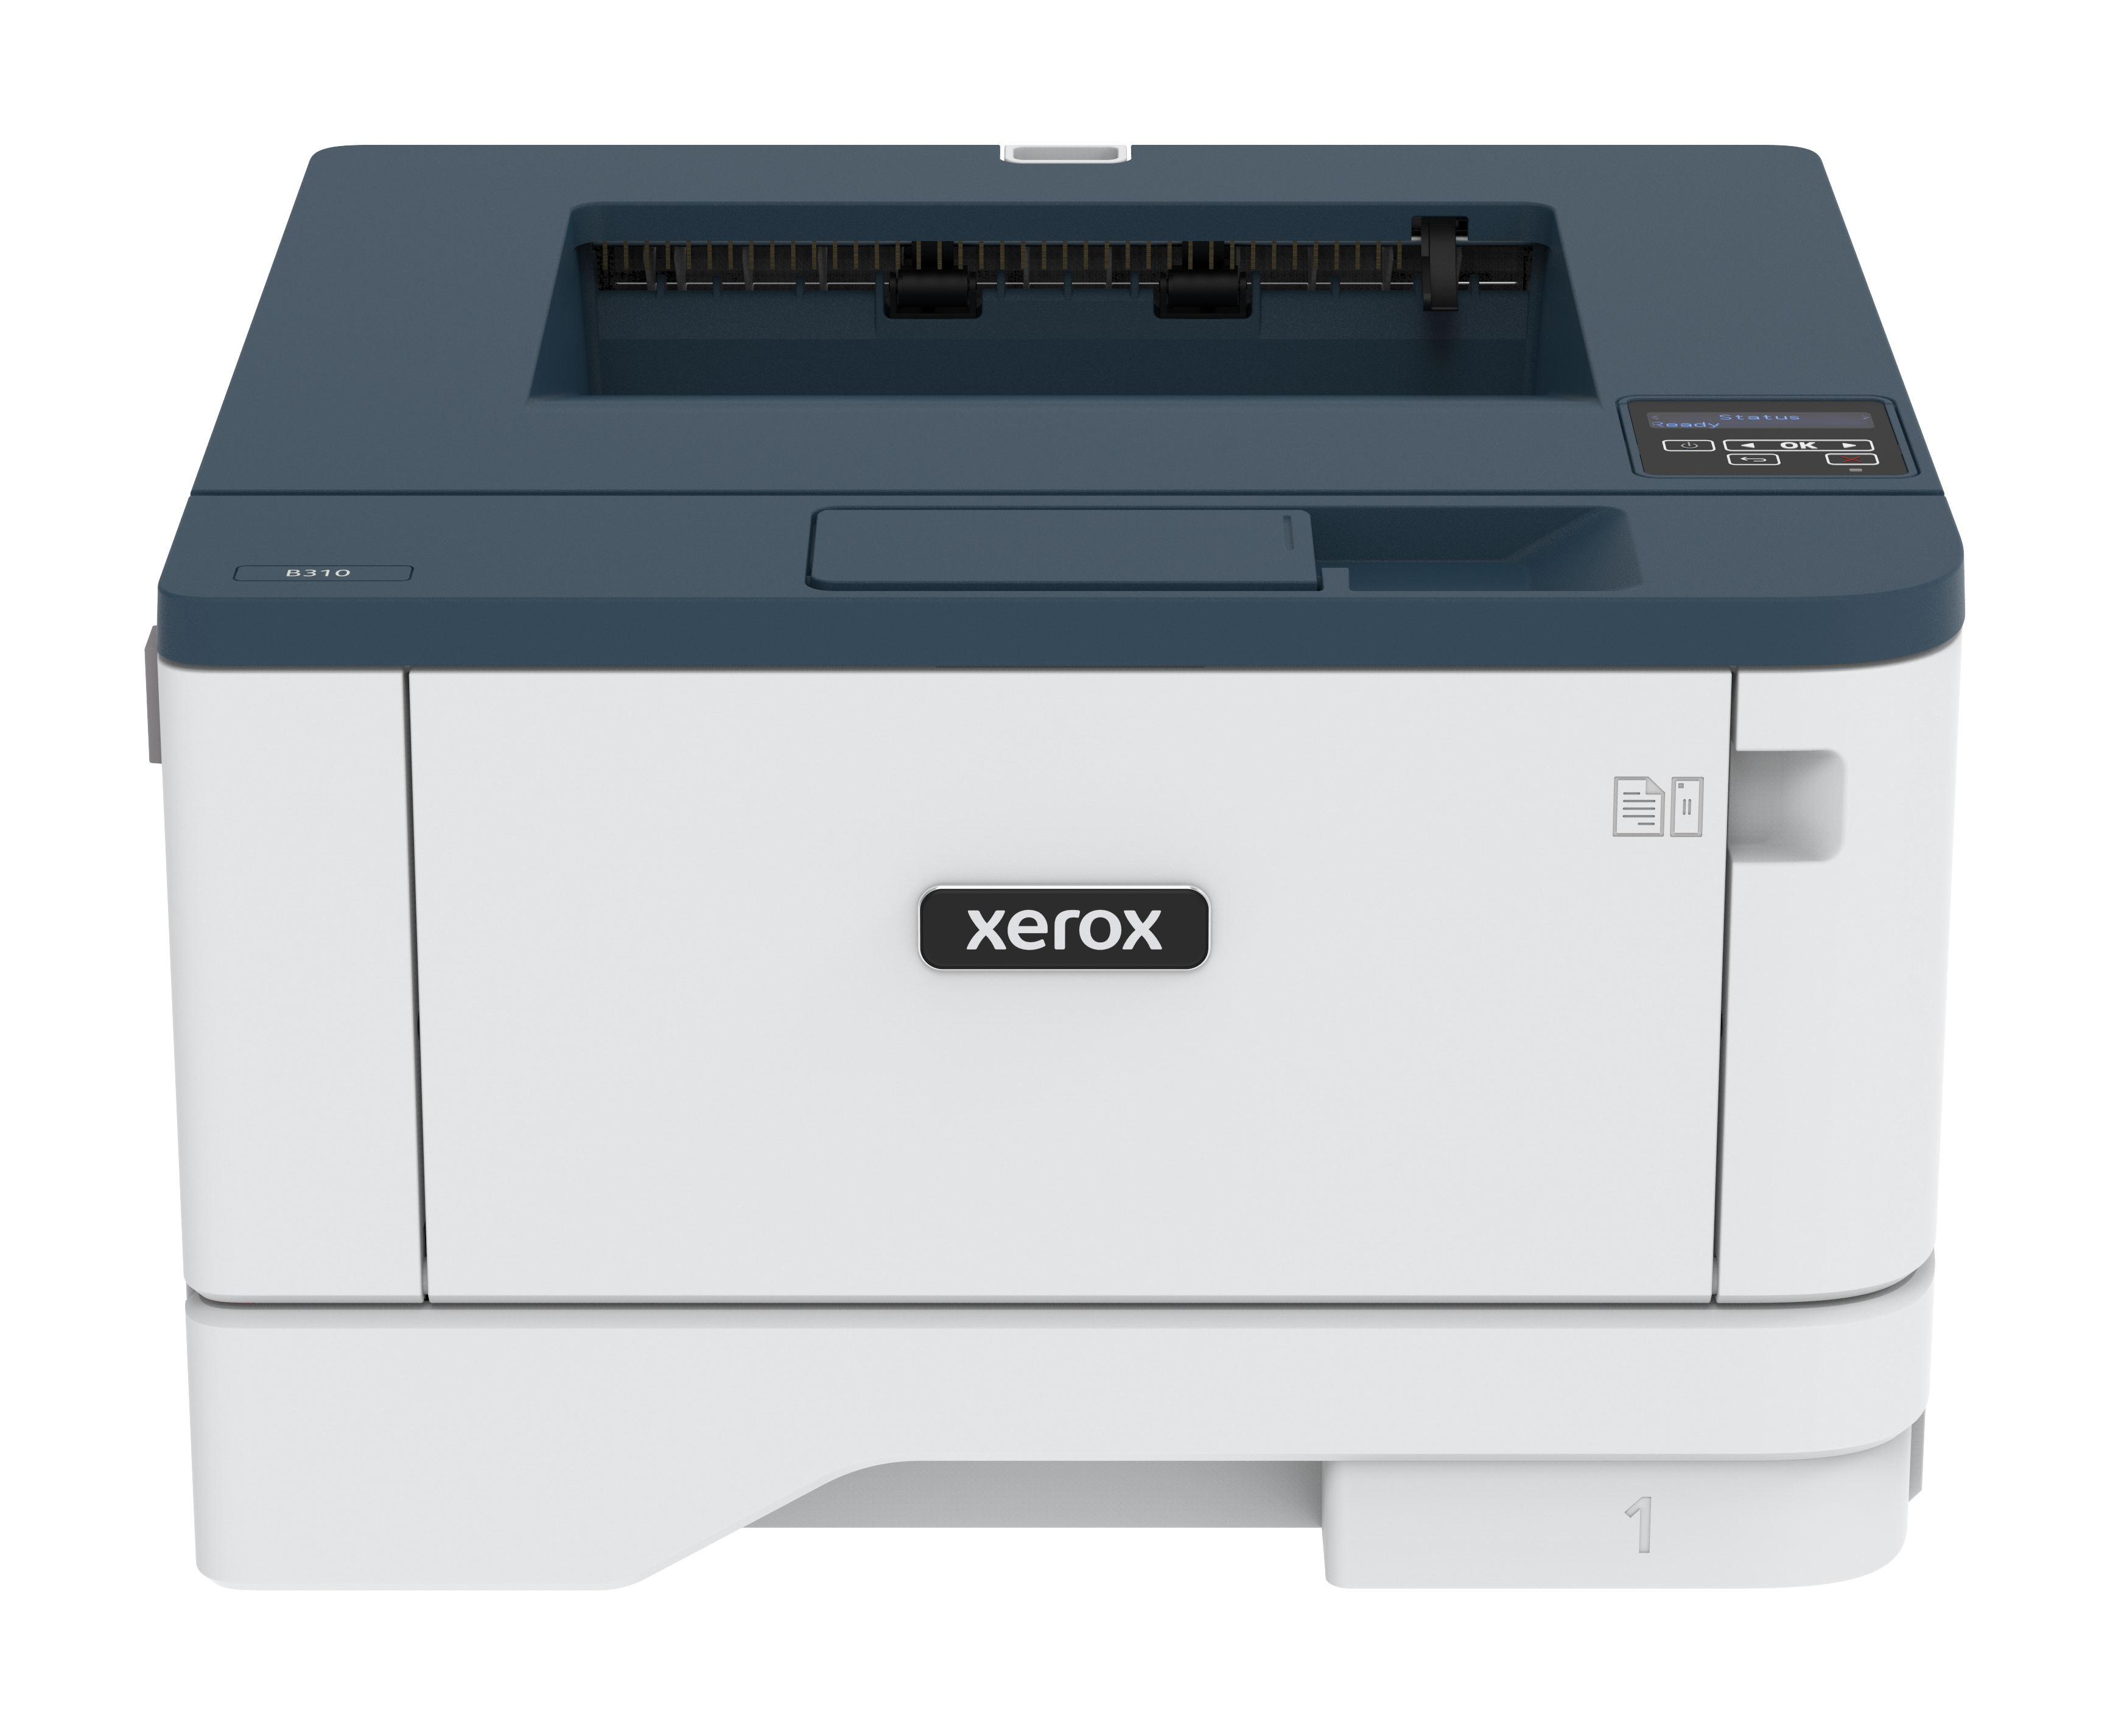 Stampante laser Xerox B310 A4 40 ppm fronte/retro wireless PS3 PCL5e/6 2 vassoi Totale 350 fogli [B310V_DNI]